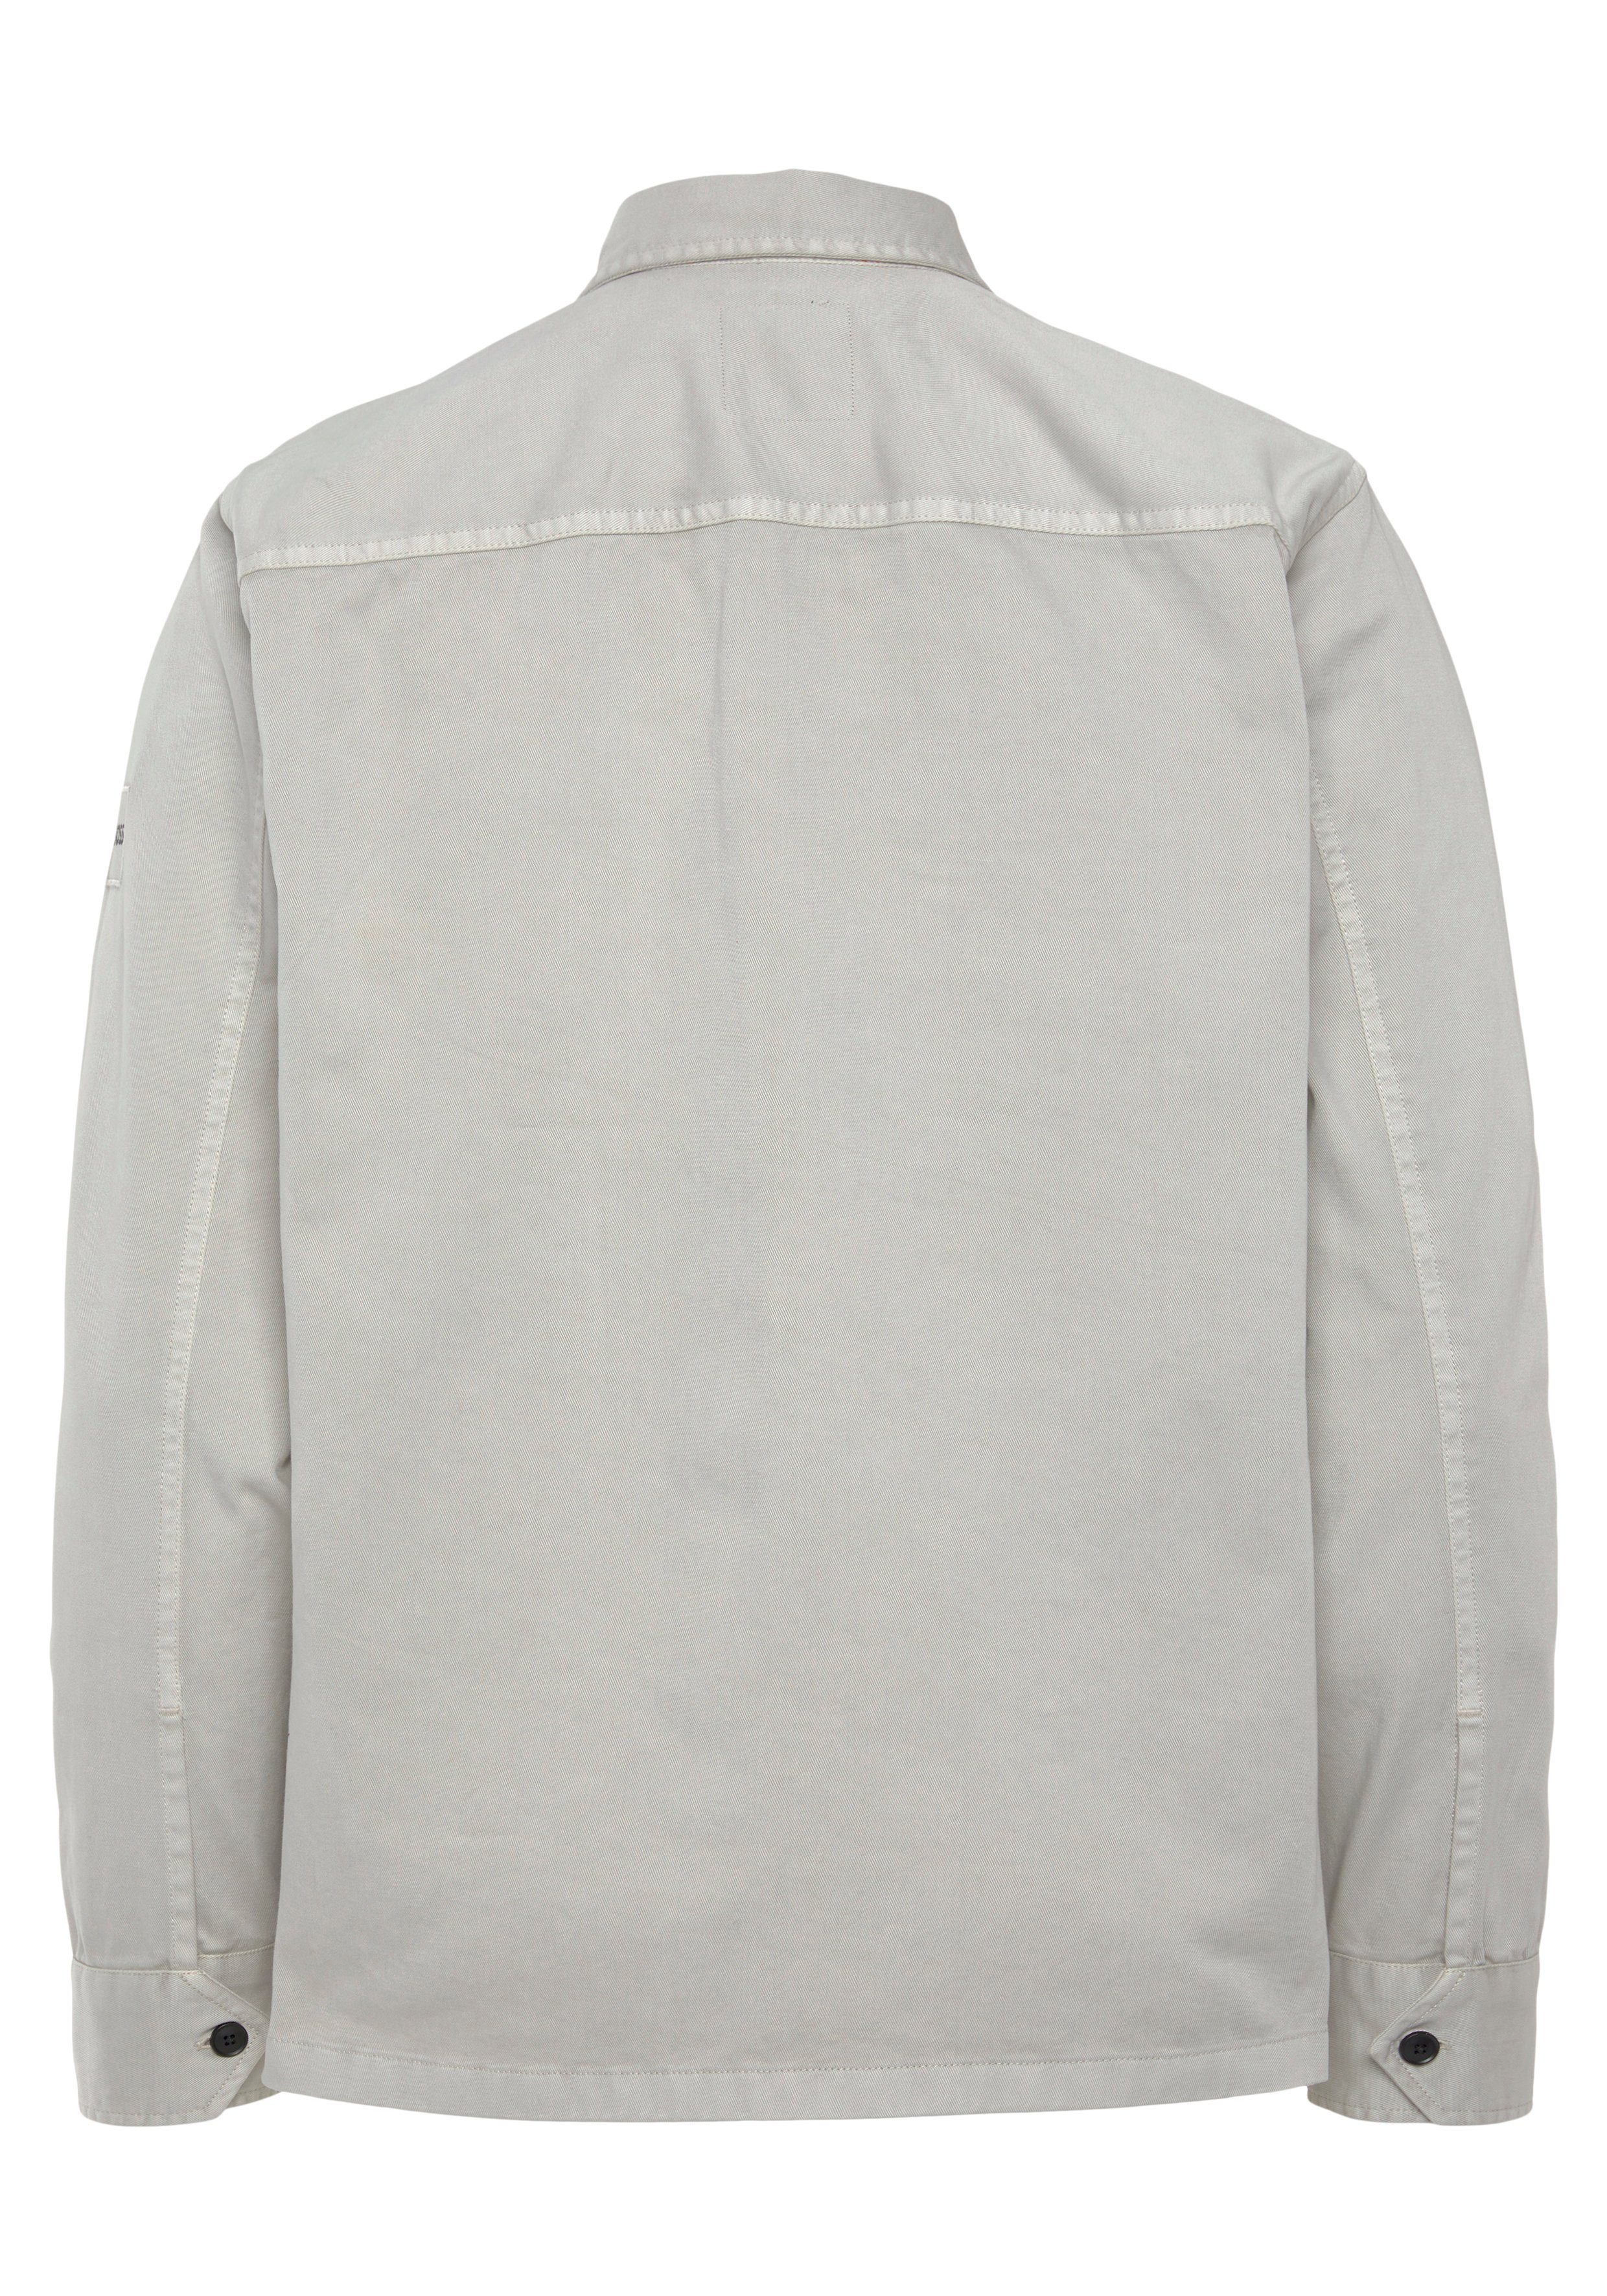 BOSS Lovelock pastellgrau ORANGE mit Brusttaschen Langarmhemd